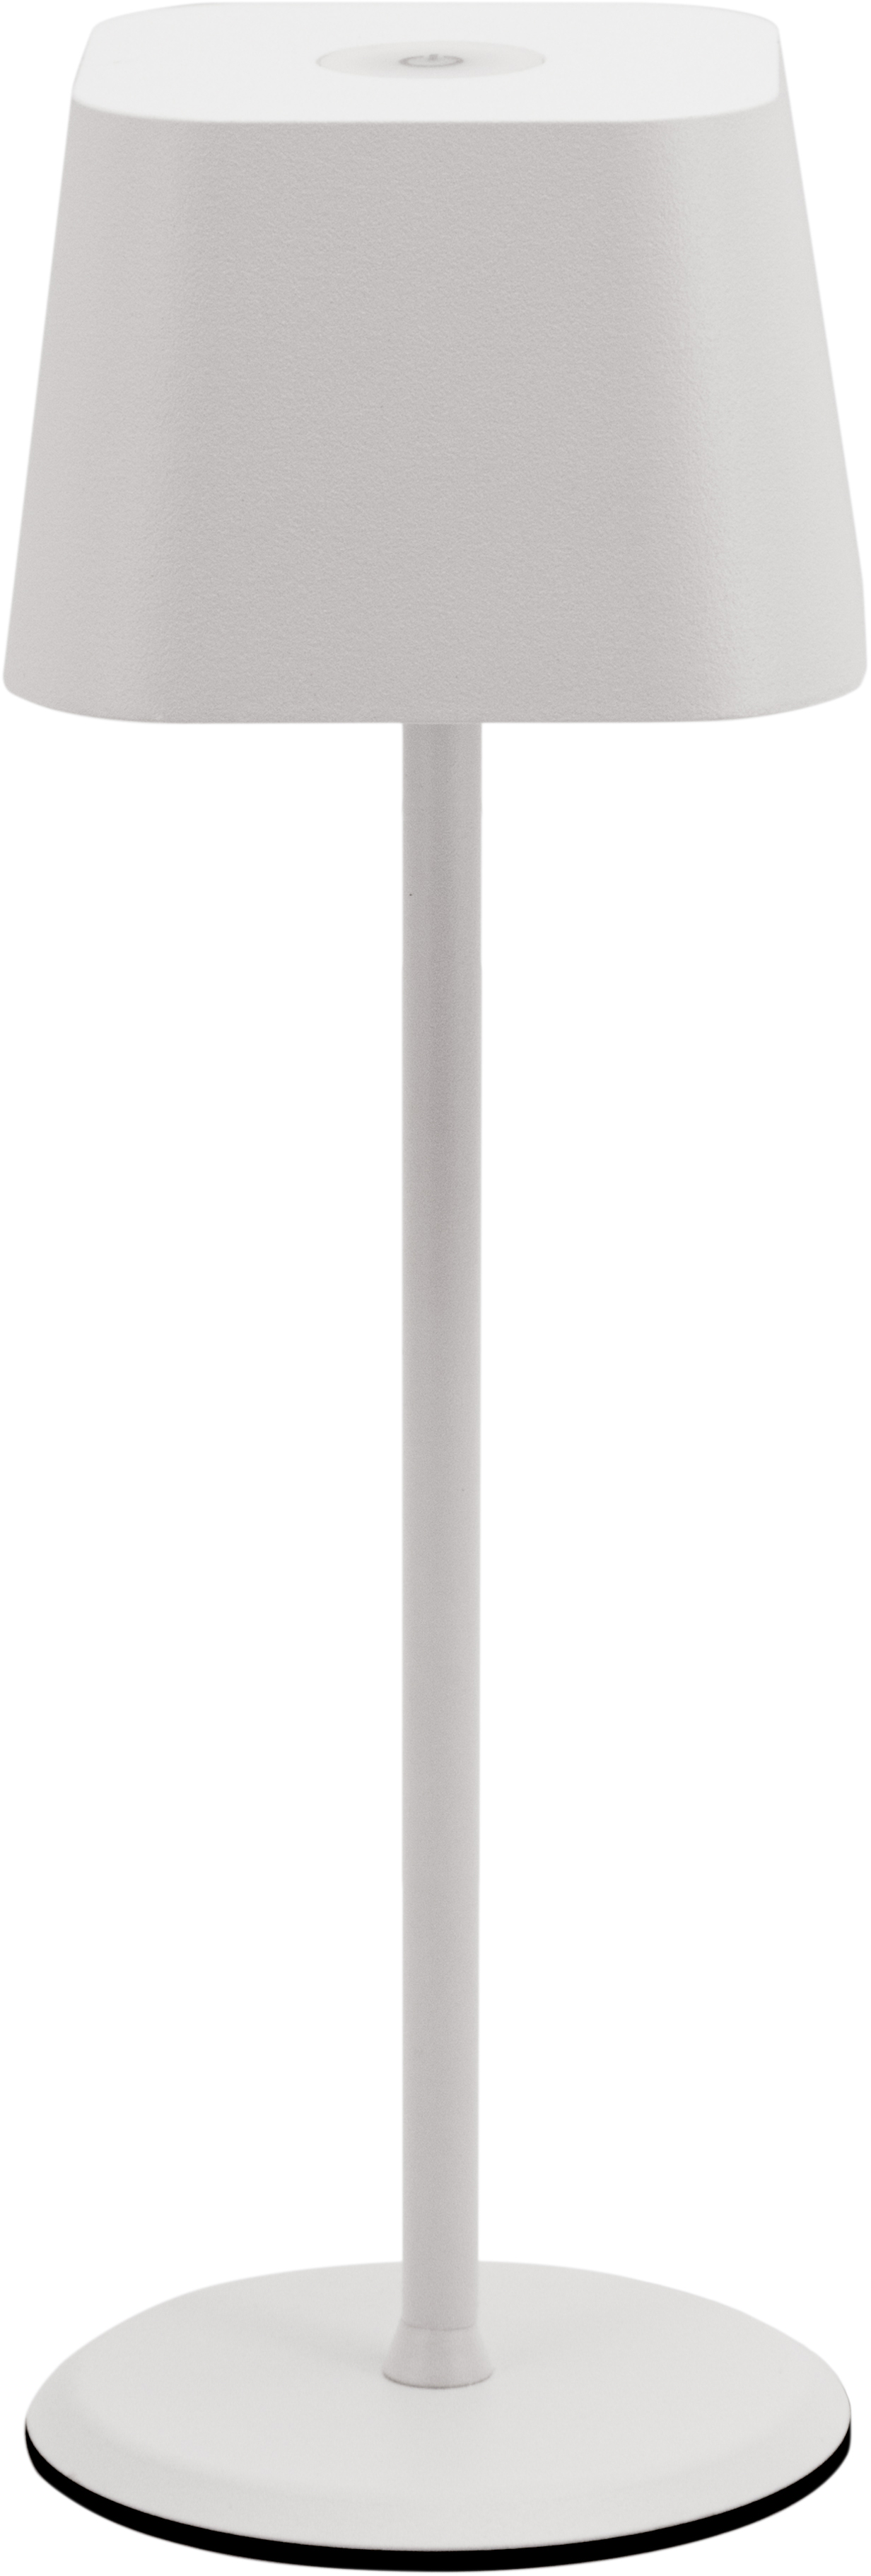 SECURIT Lampe de table MALTE LP-MT-WT blanc, batterie, dimmable blanc, batterie, dimmable